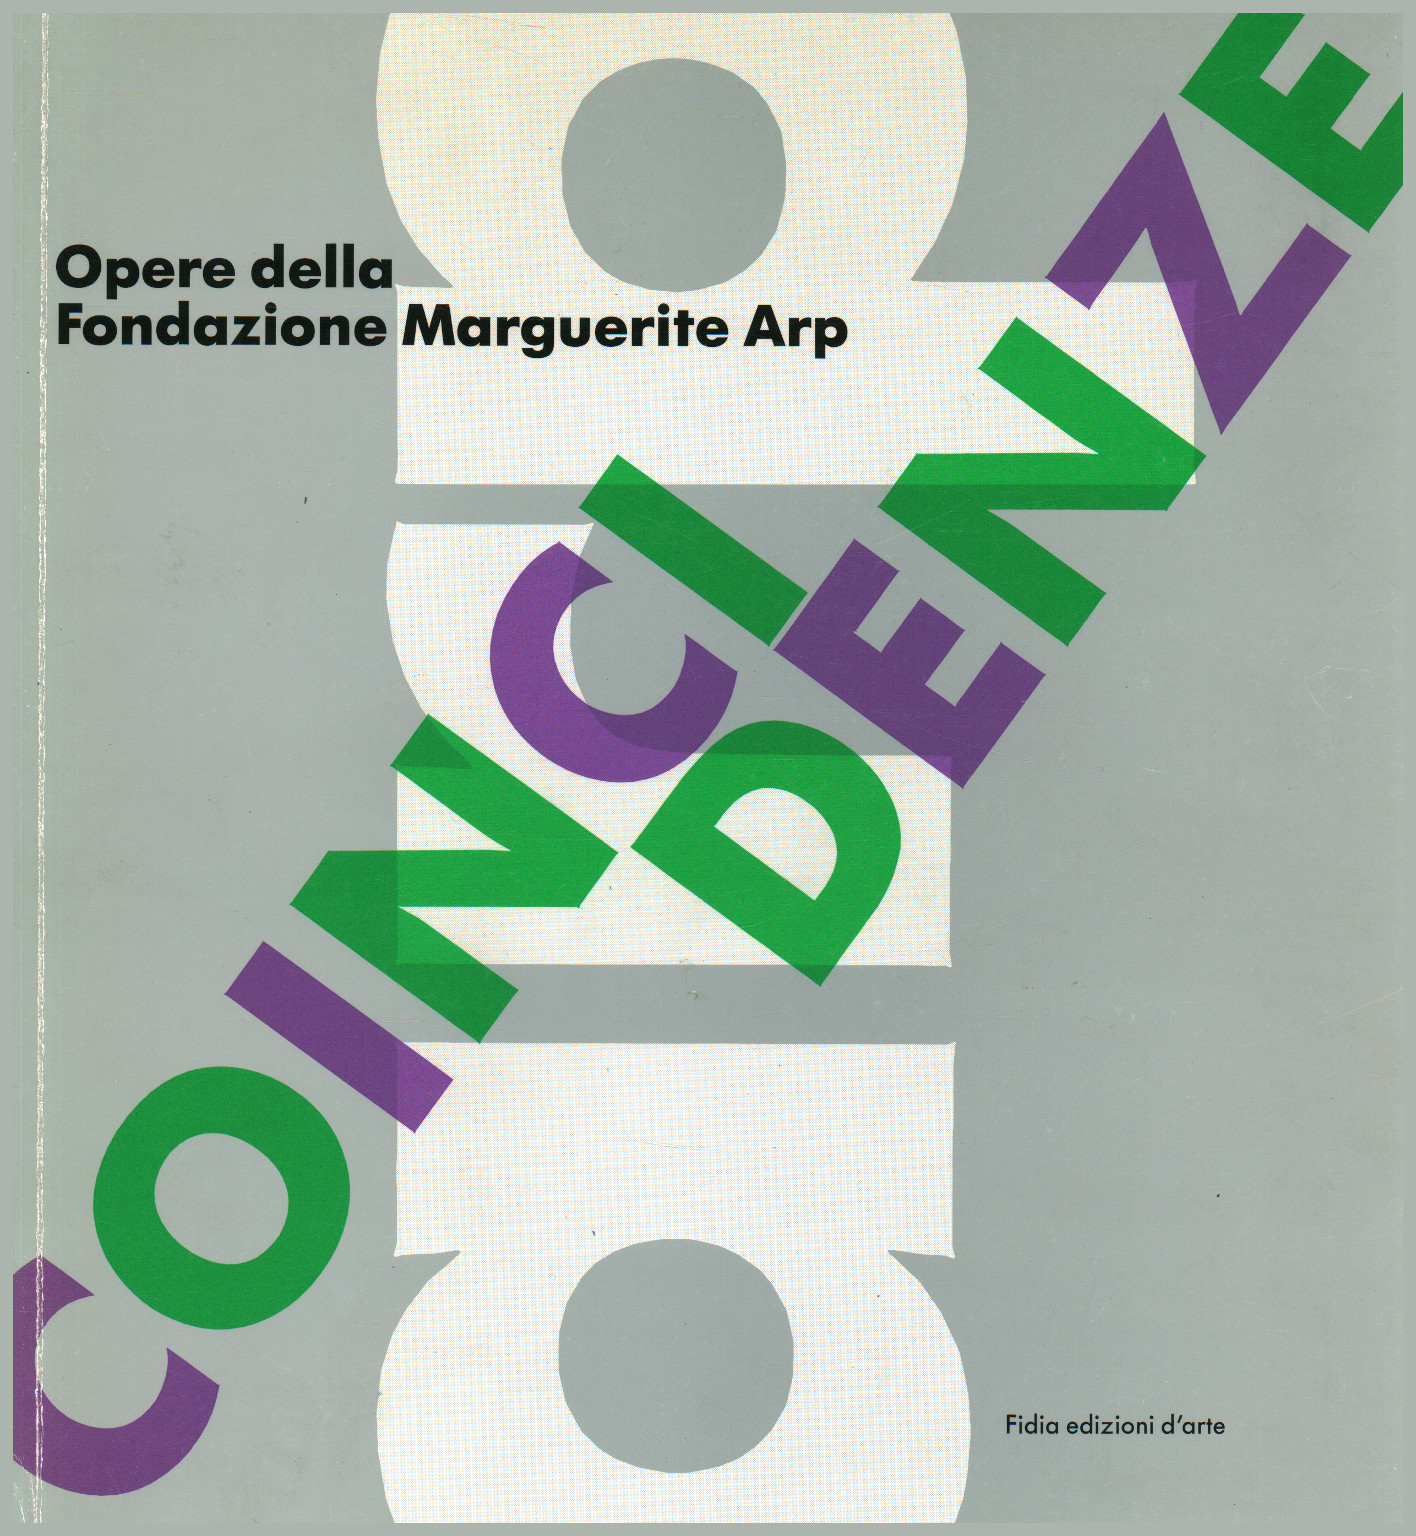 Coincidenze: Opere Della Fondazione Marguerite Arp, s.a.